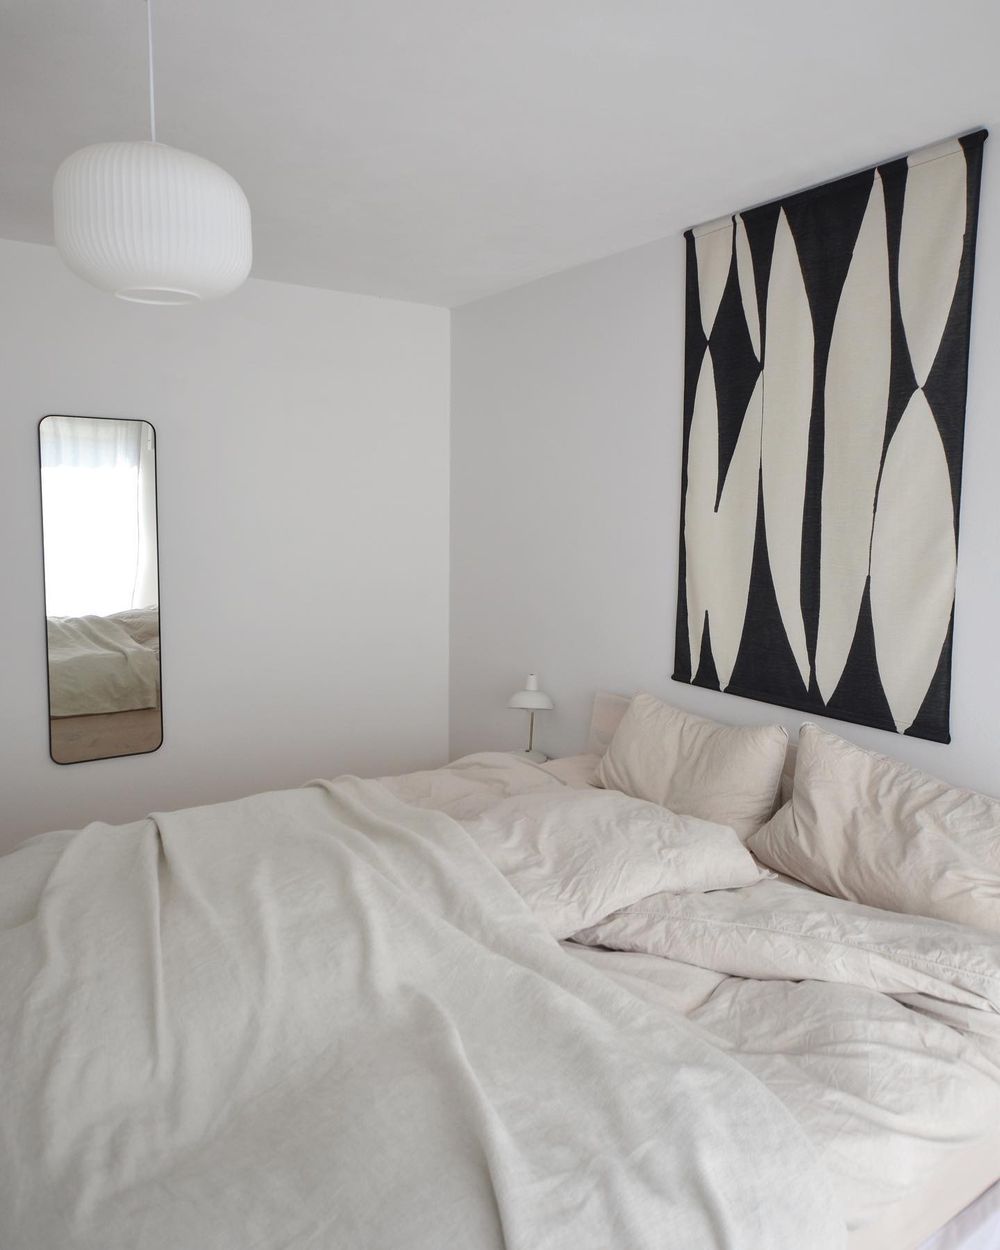 Minimalist bedroom decor ideas einfach.wohnen